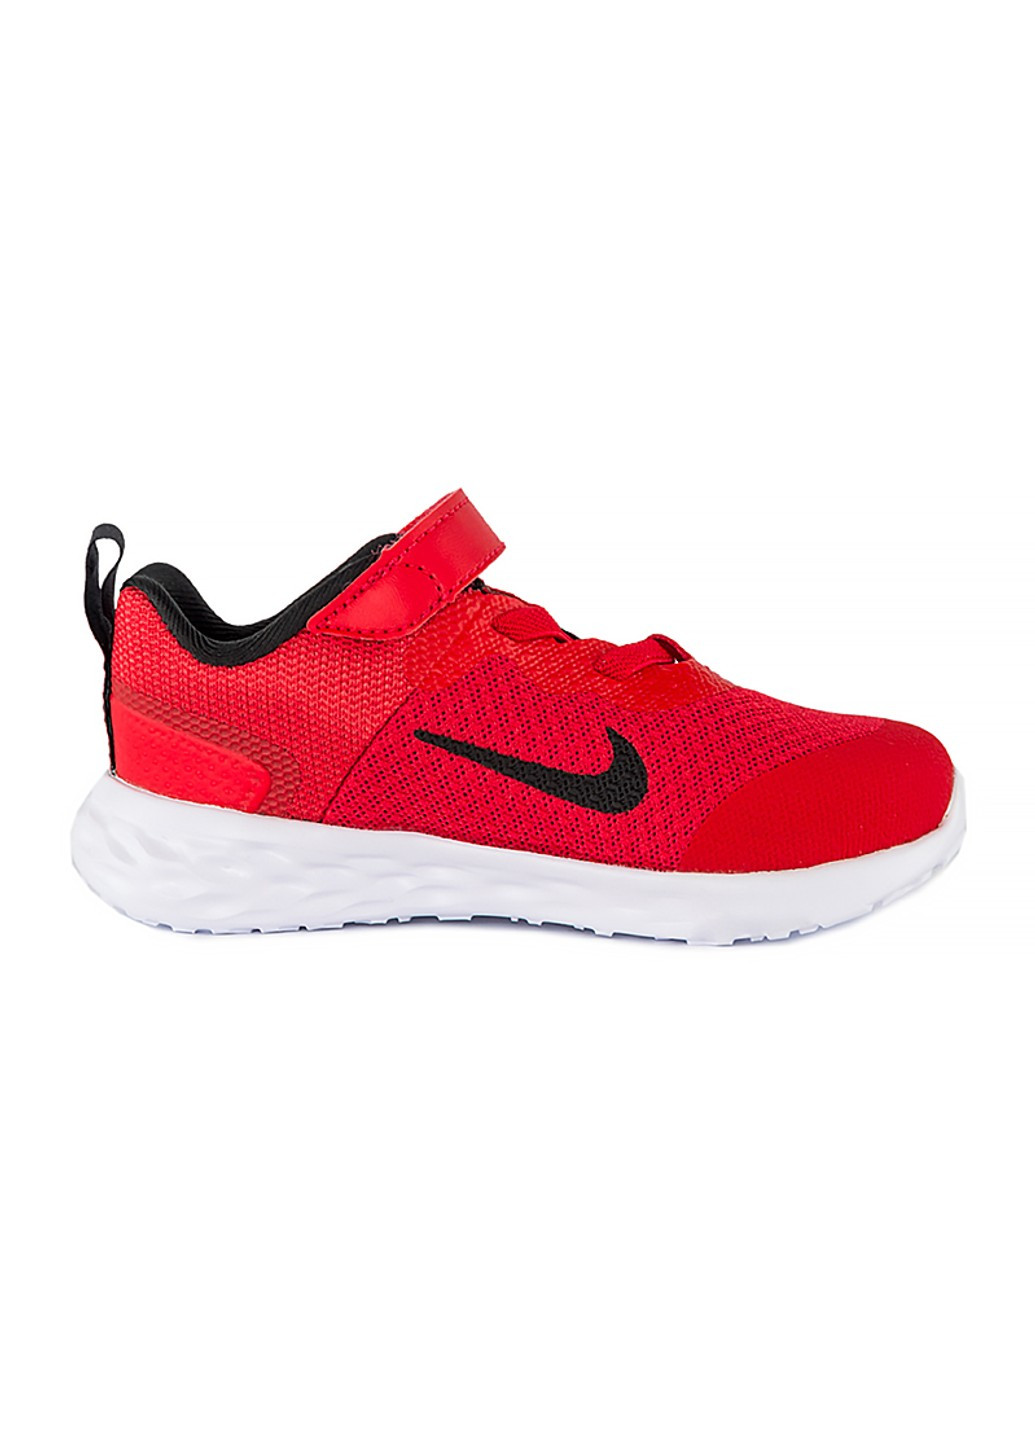 Красные демисезонные кроссовки revolution 6 nn (tdv) Nike